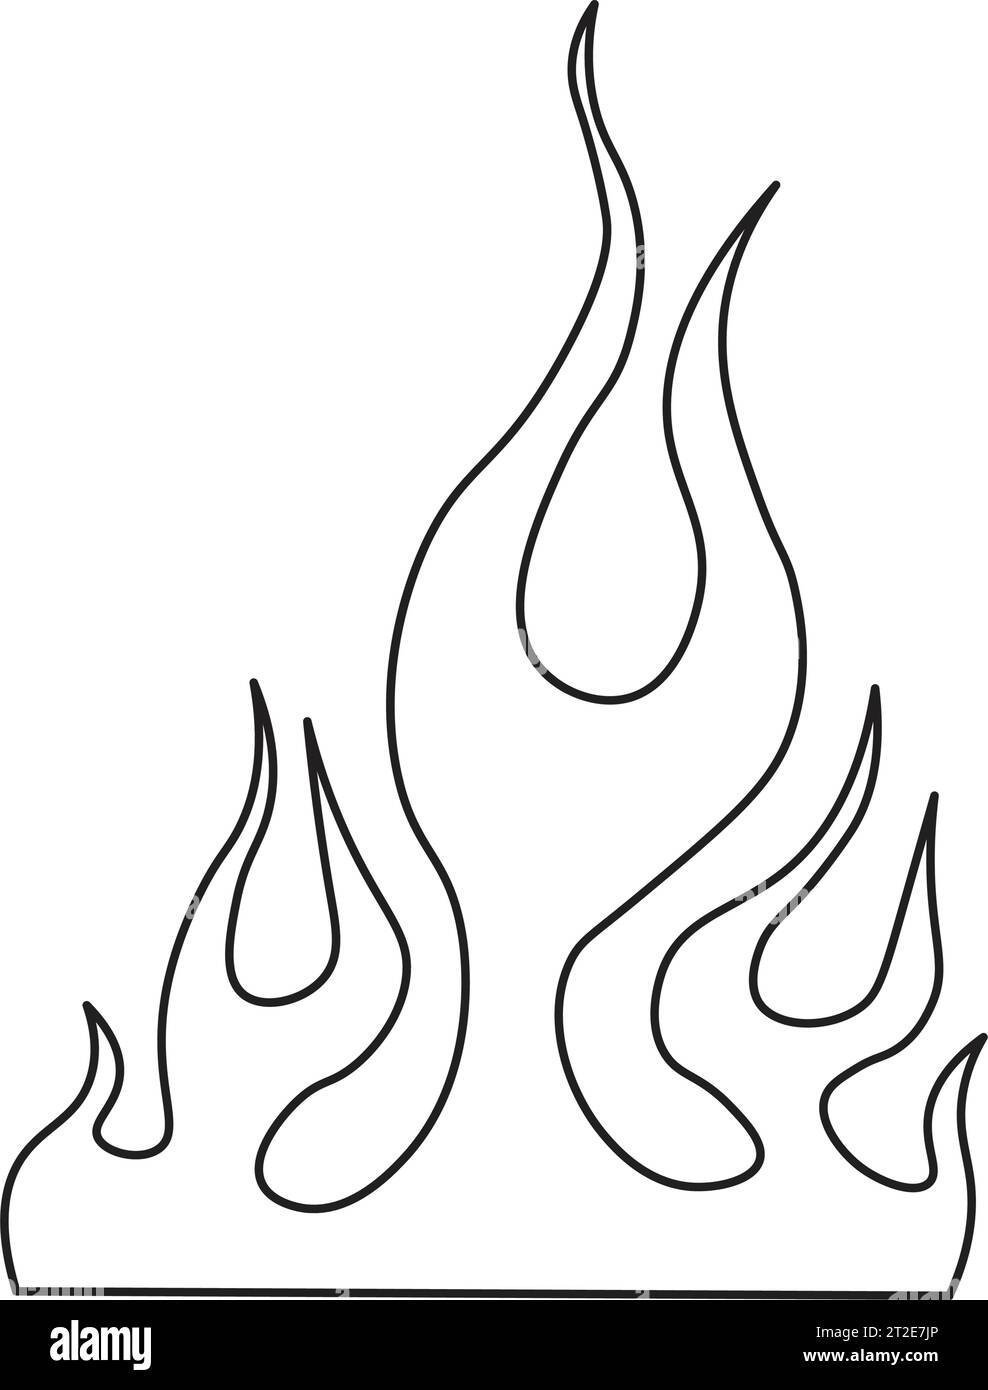 minimal flame tattoo | Flame tattoos, Firefighter tattoo, Minimal tattoo